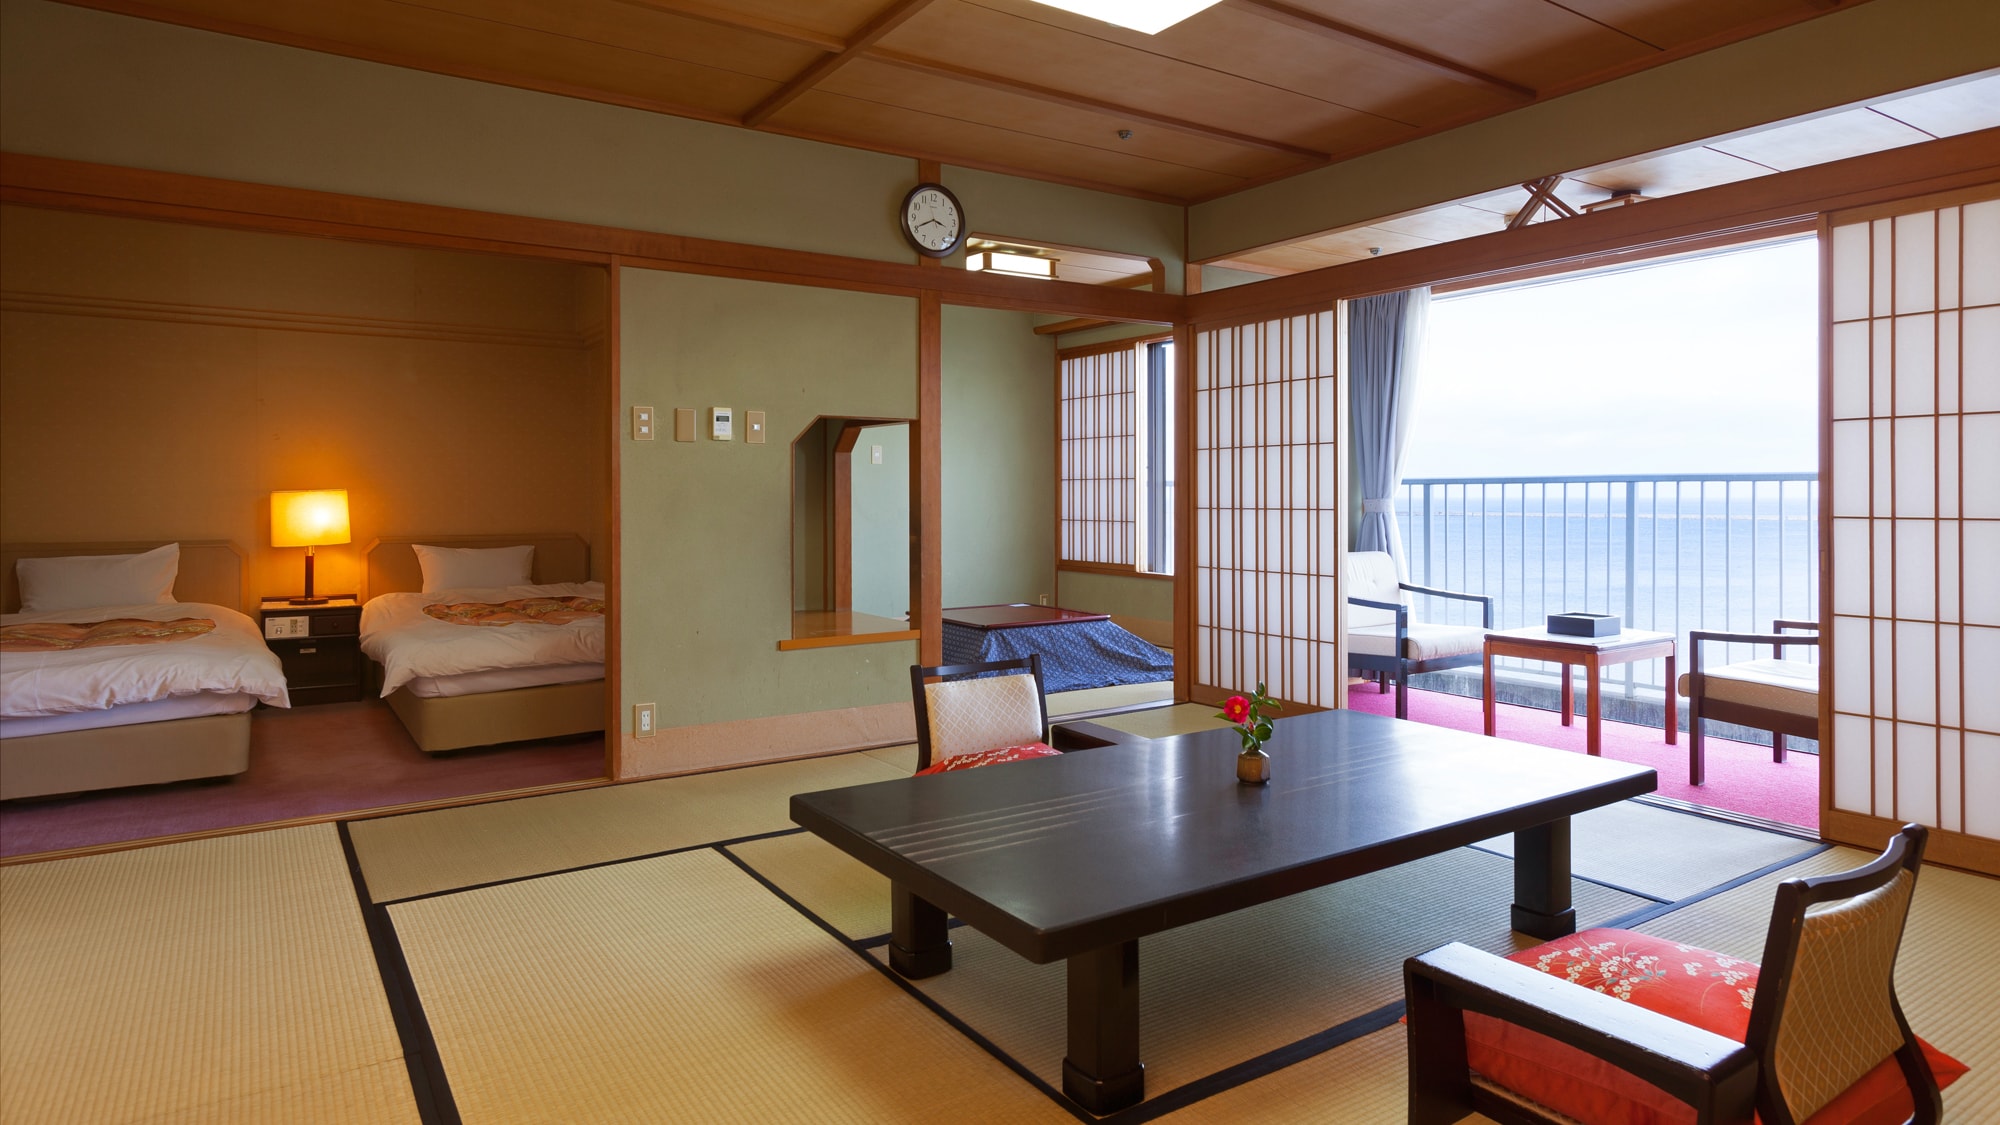 ◆特價房【花漆】日式和西式房間12.5榻榻米+4.5榻榻米+雙床